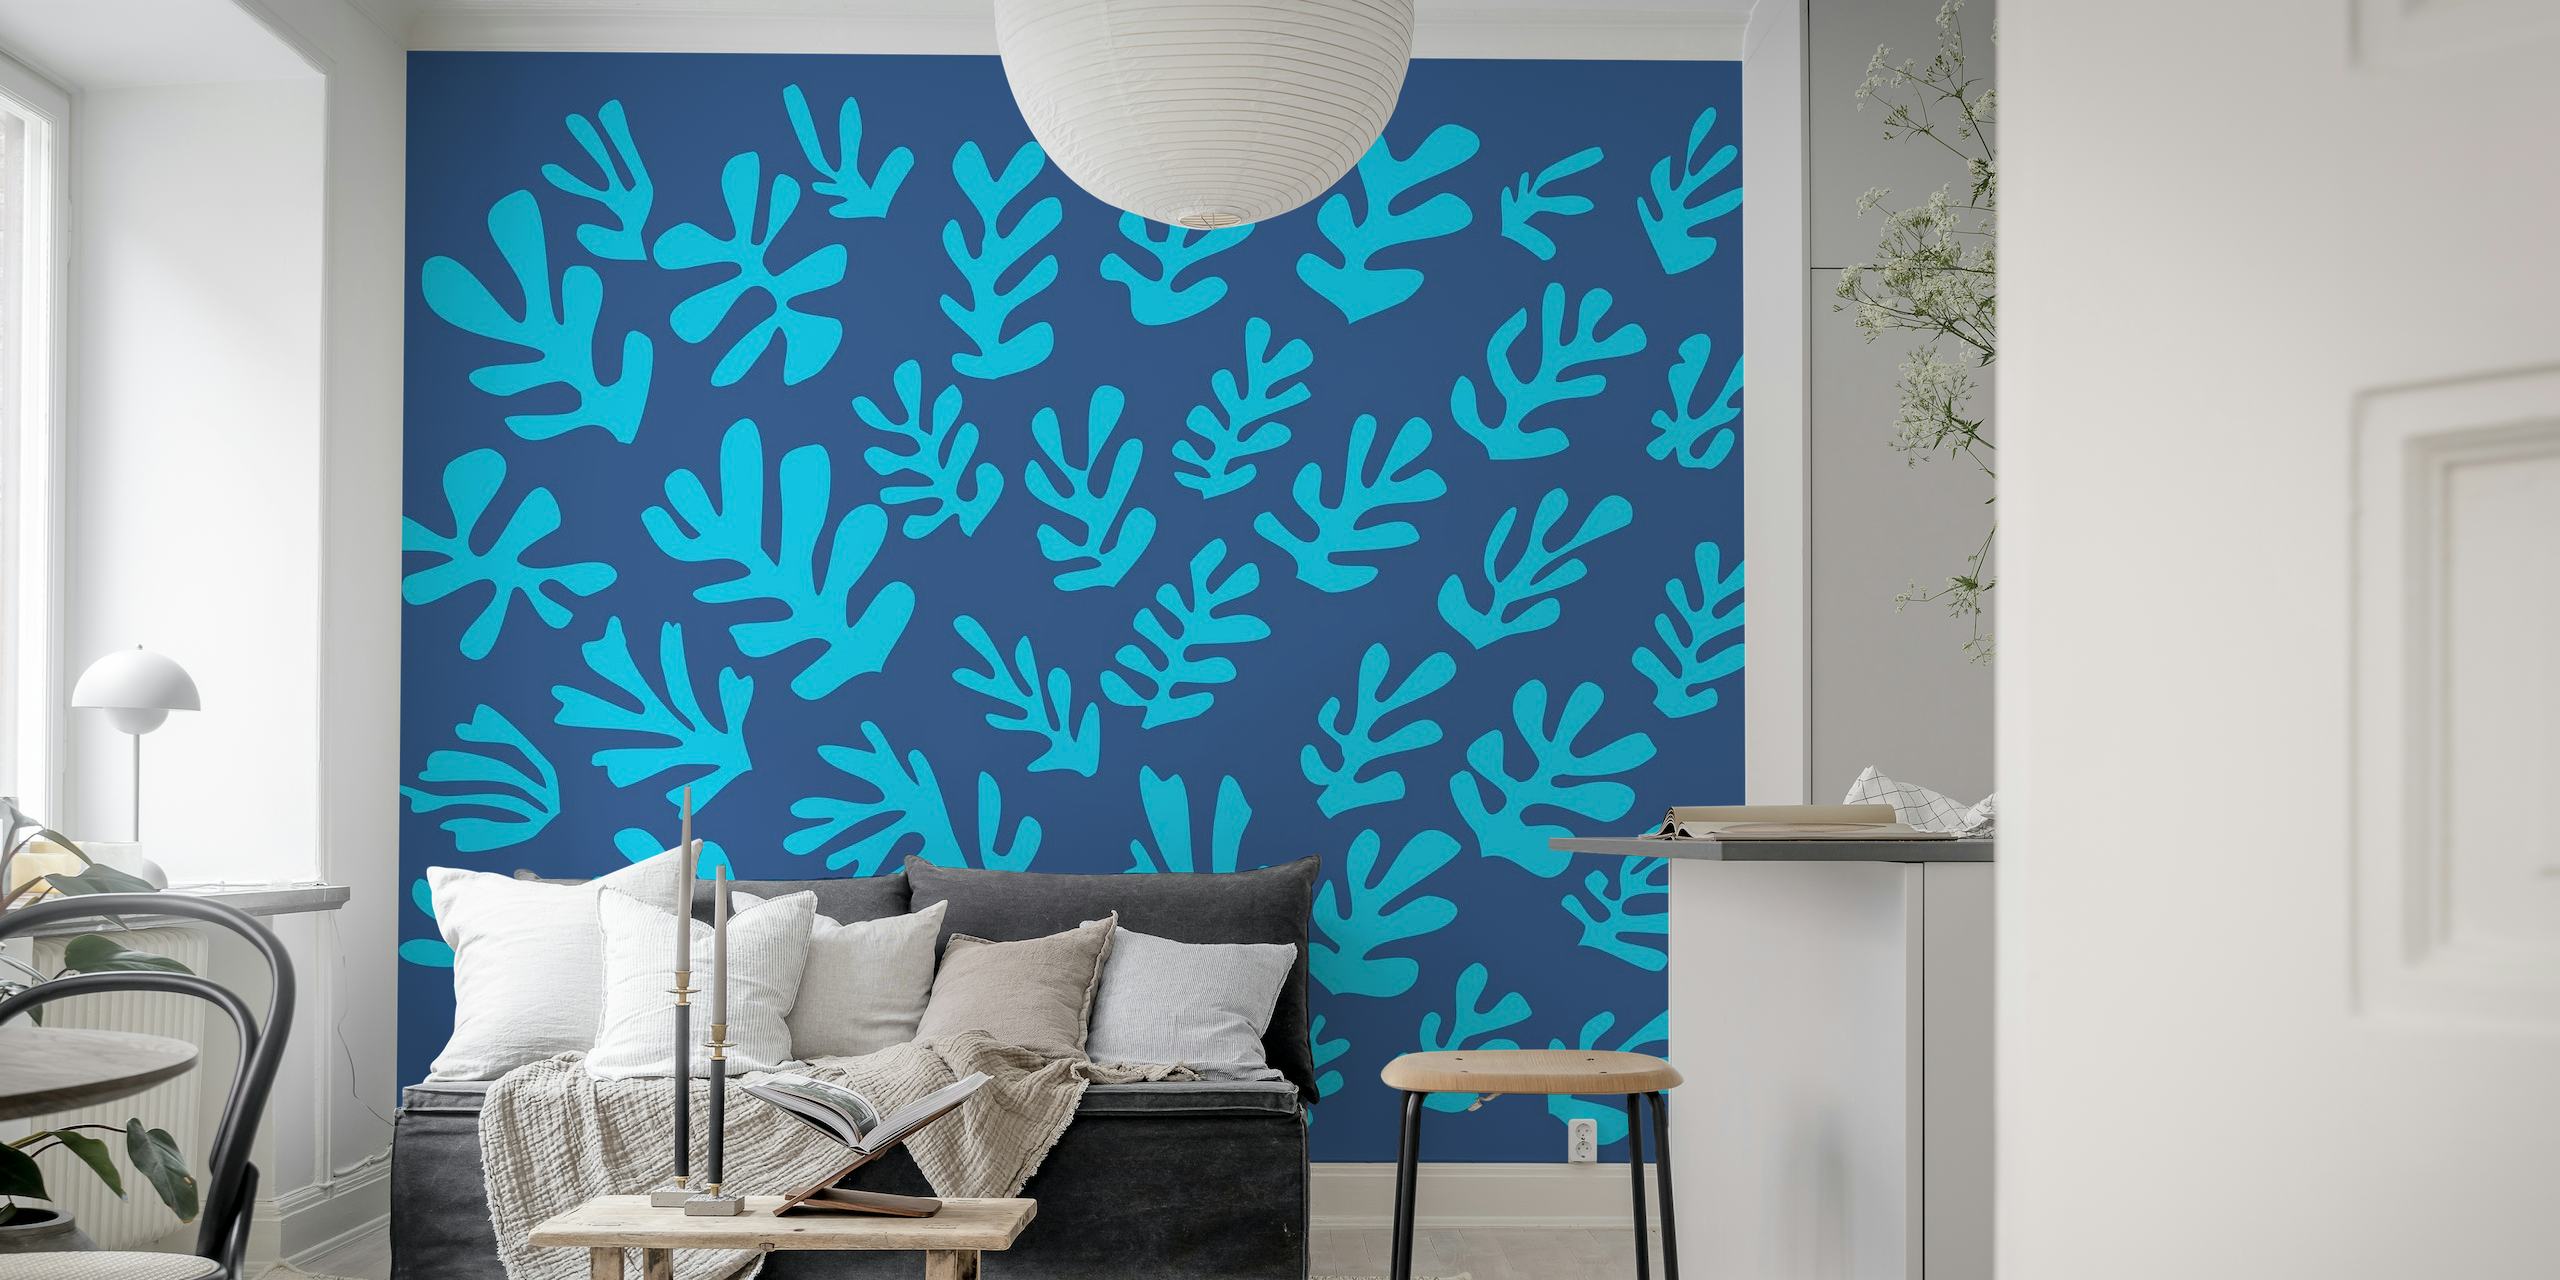 Minimalistyczna fototapeta w stylu Matisse'a z niebieskimi liśćmi na bogatym tle.